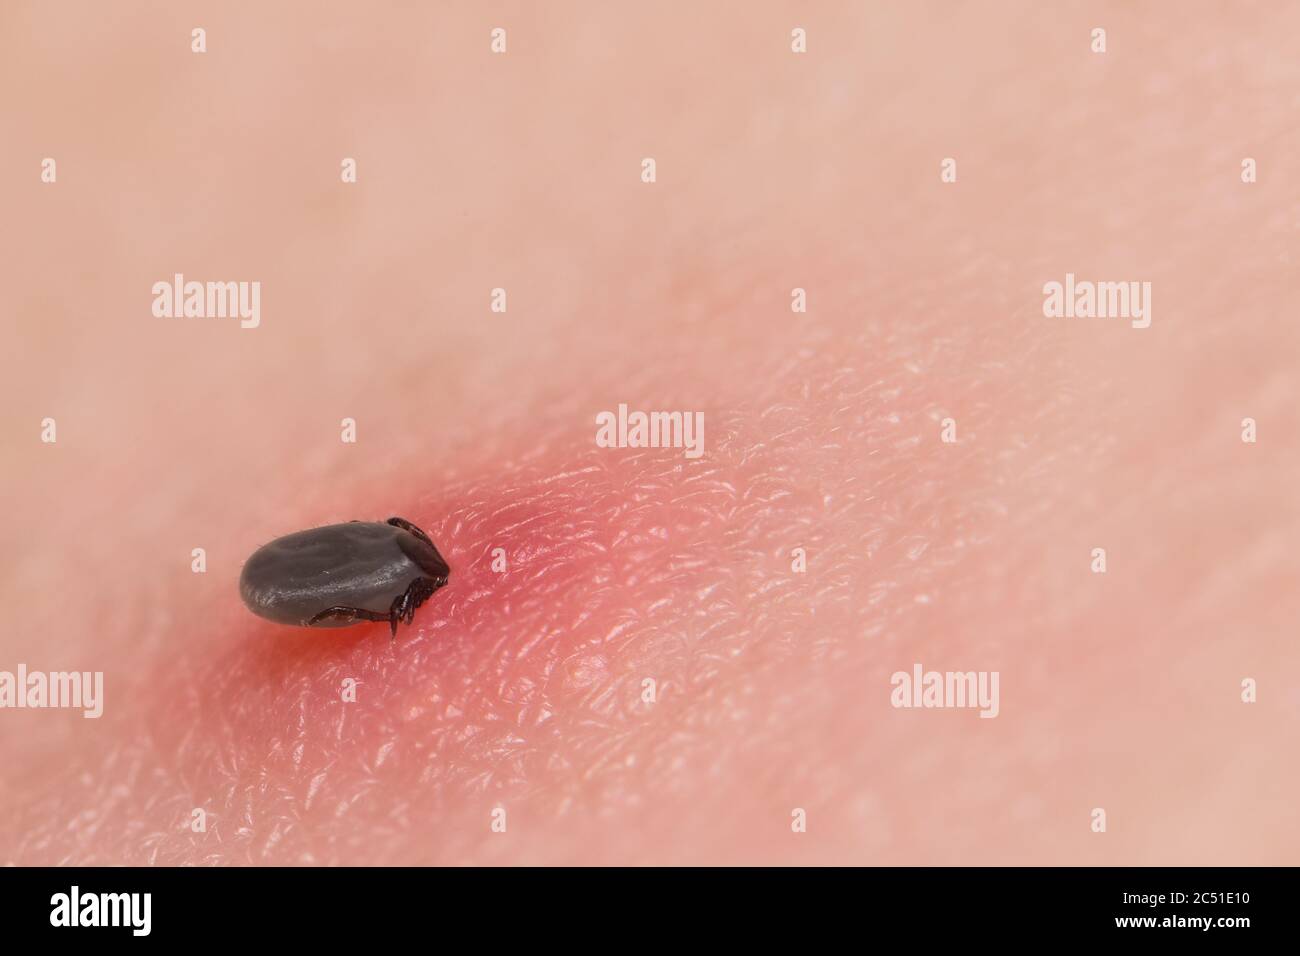 Zecche di fagioli di ricino femmina succhiare sangue nella pelle irritata rossa. Ixodes ricinus. Parassita ingrasso pieno di morso di sangue nell'epidermide umana. Malattia di Lyme. Foto Stock